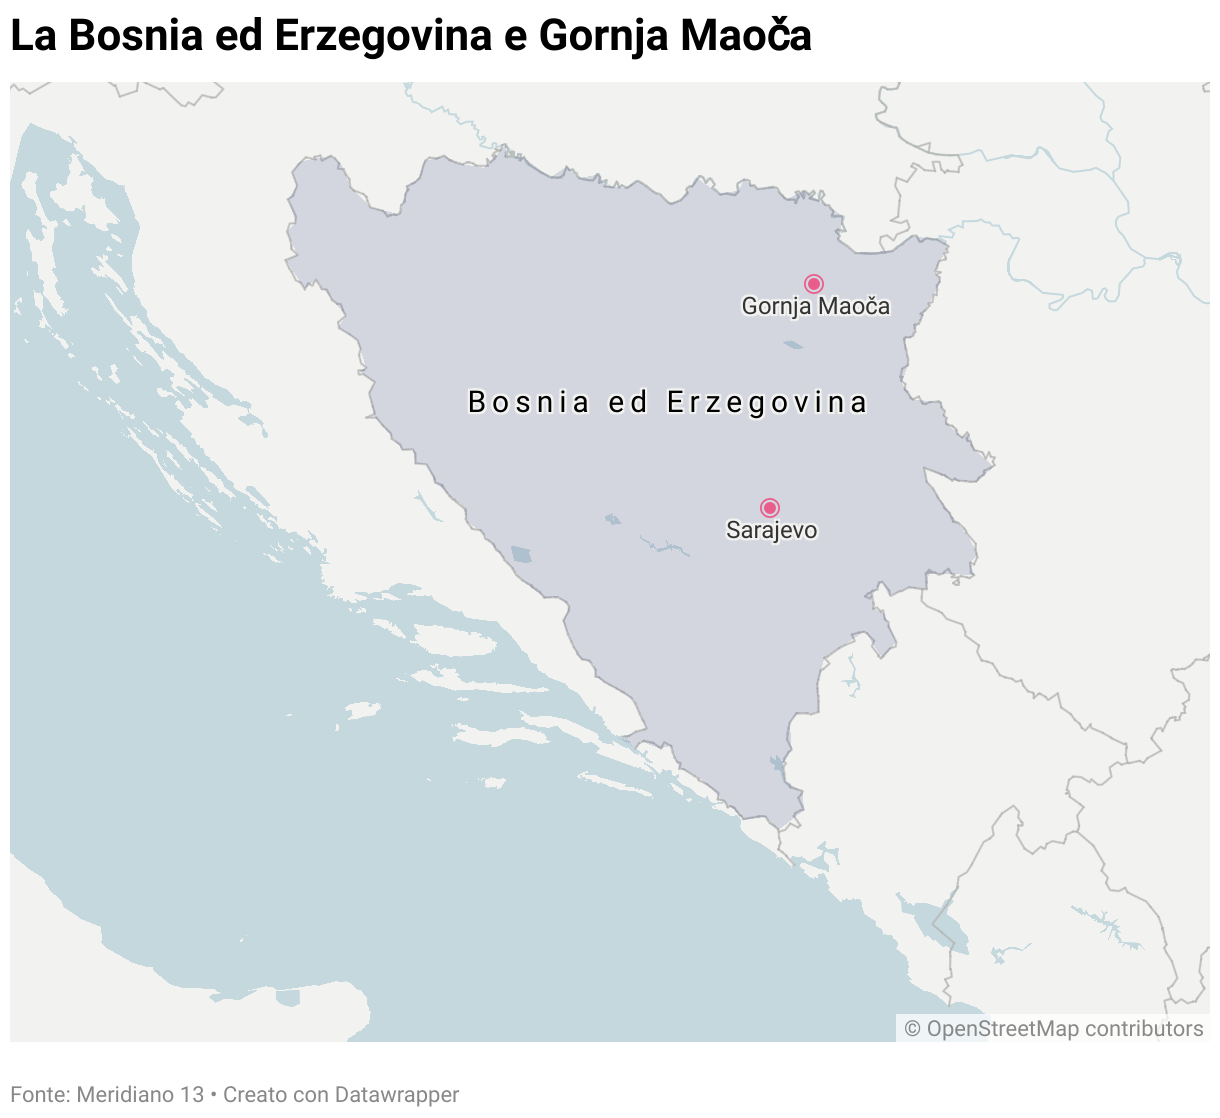 Mappa della Bosnia ed Erzegovina con indicata la posizione del villaggio di Gornja Maoča.